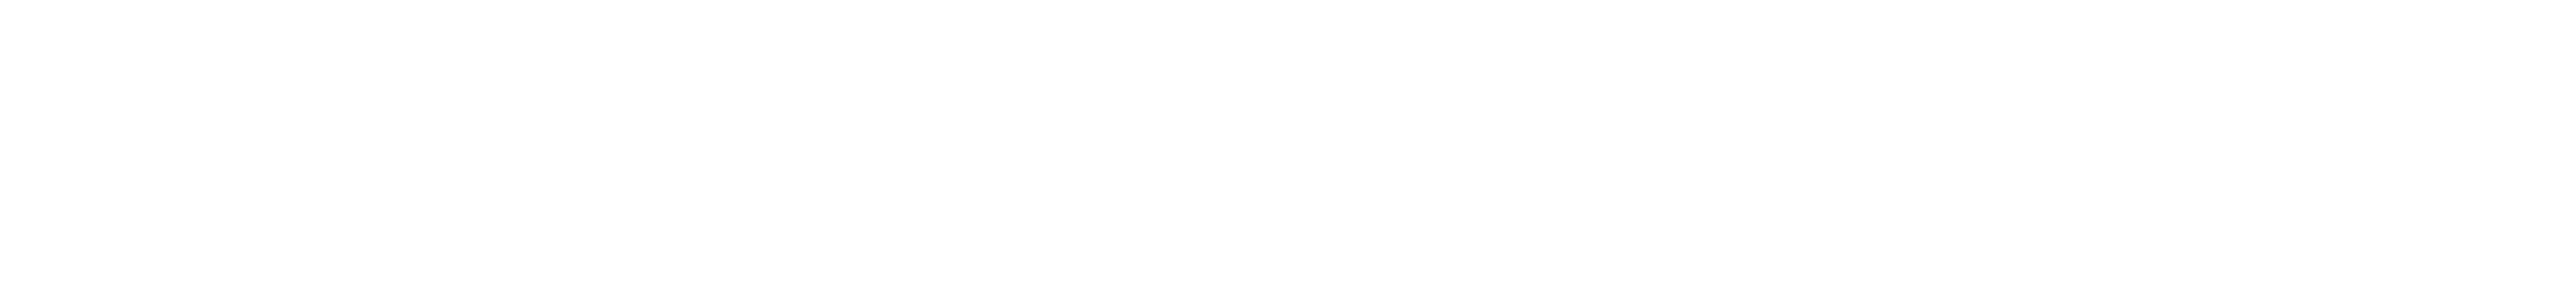 The official logo of Auburn University